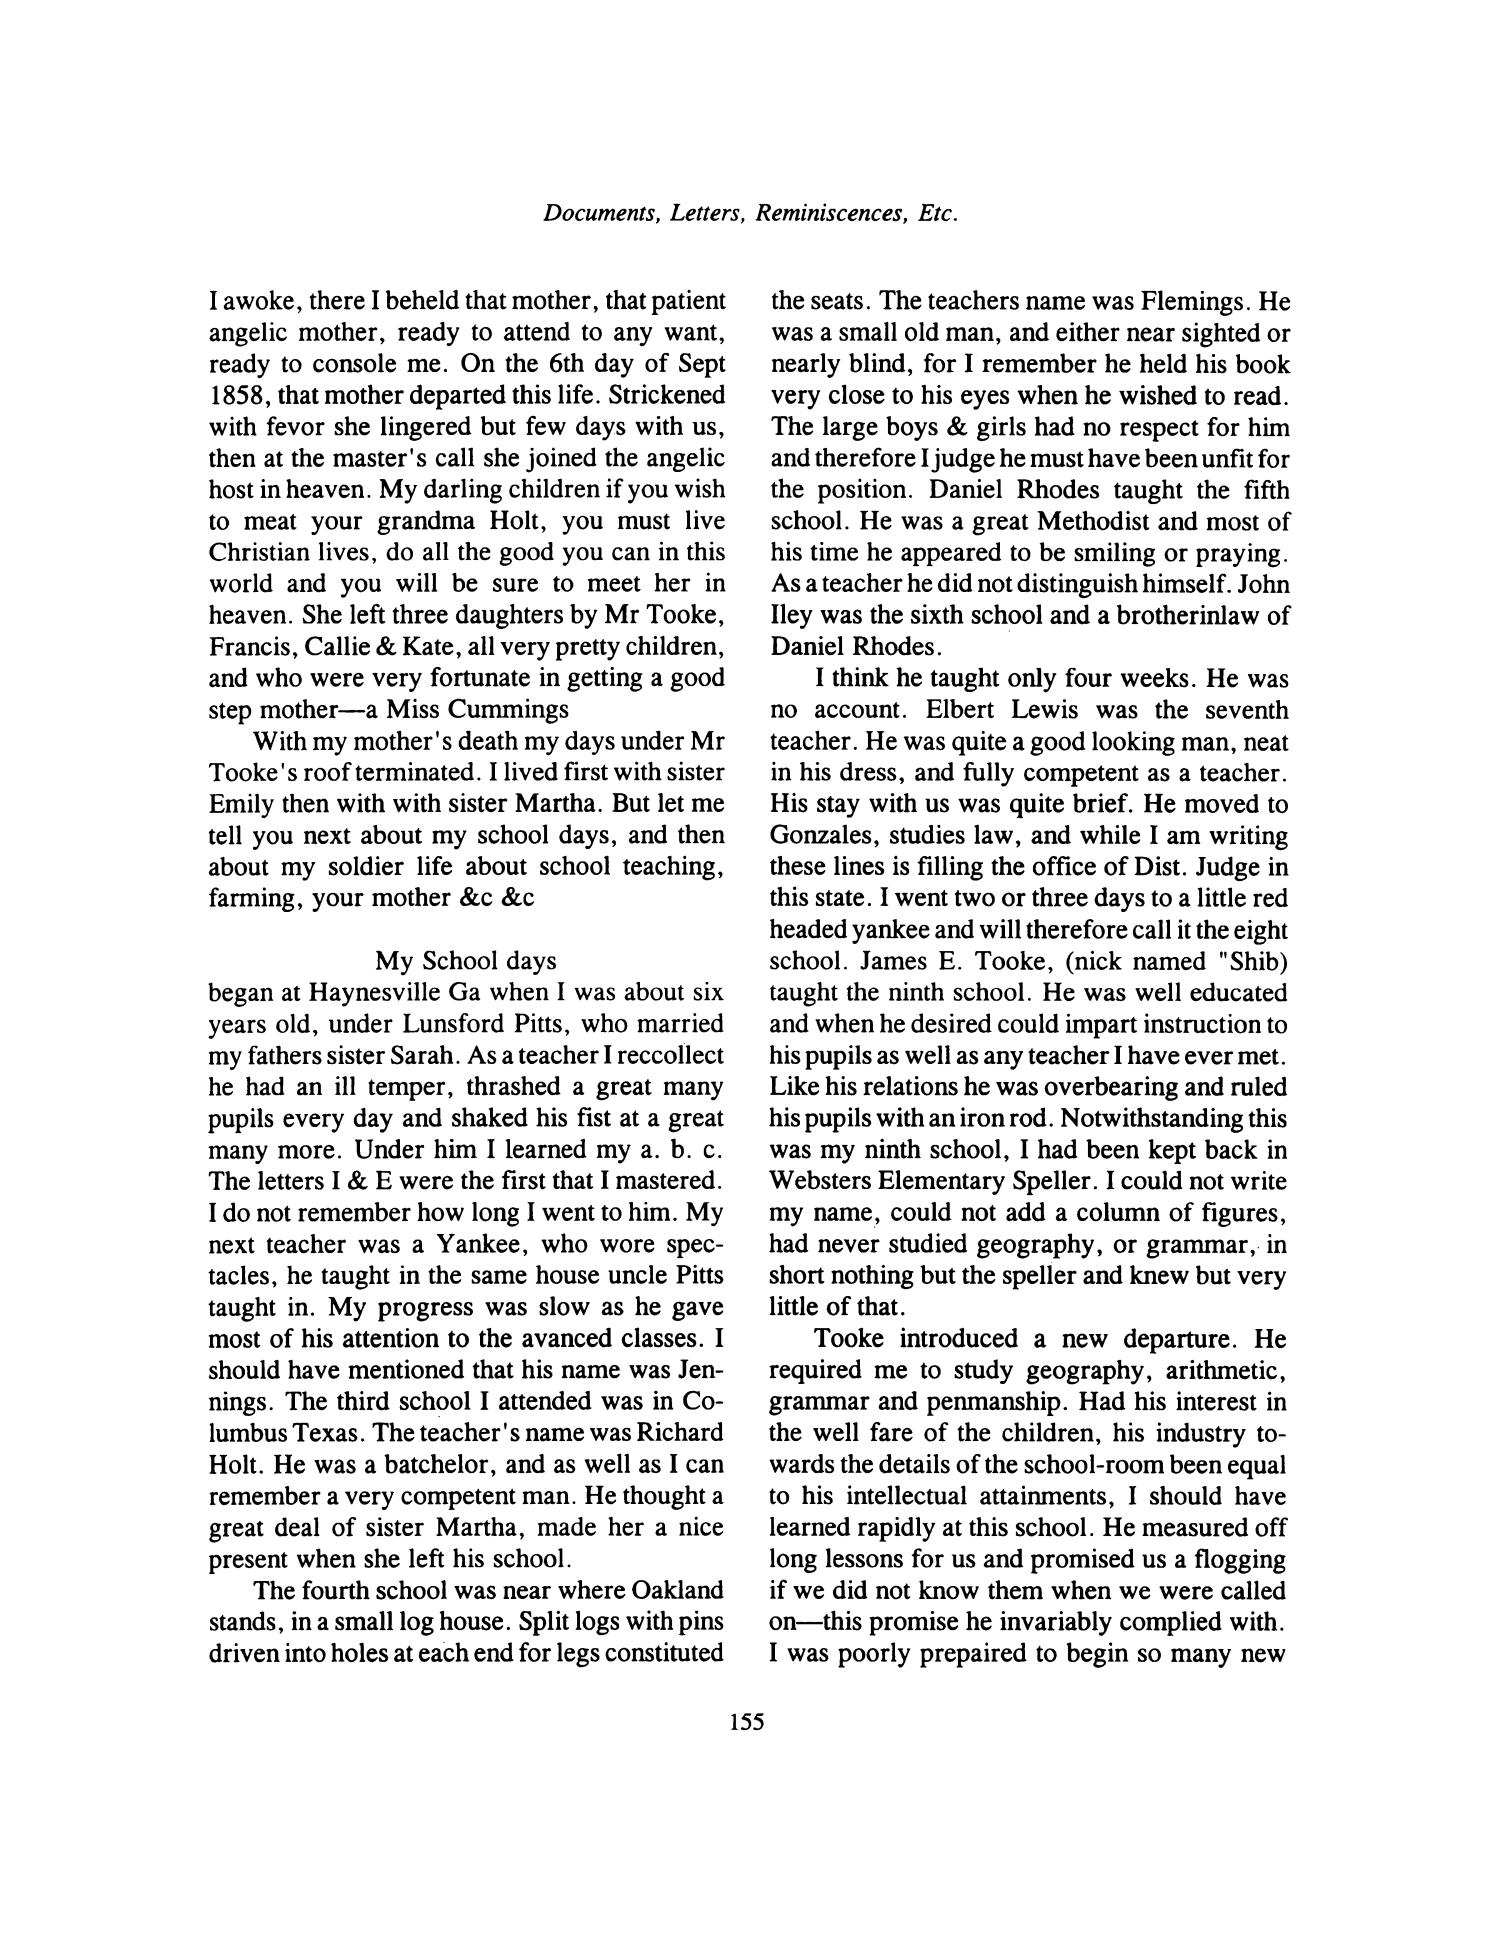 Nesbitt Memorial Library Journal, Volume 6, Number 3, September 1996
                                                
                                                    155
                                                